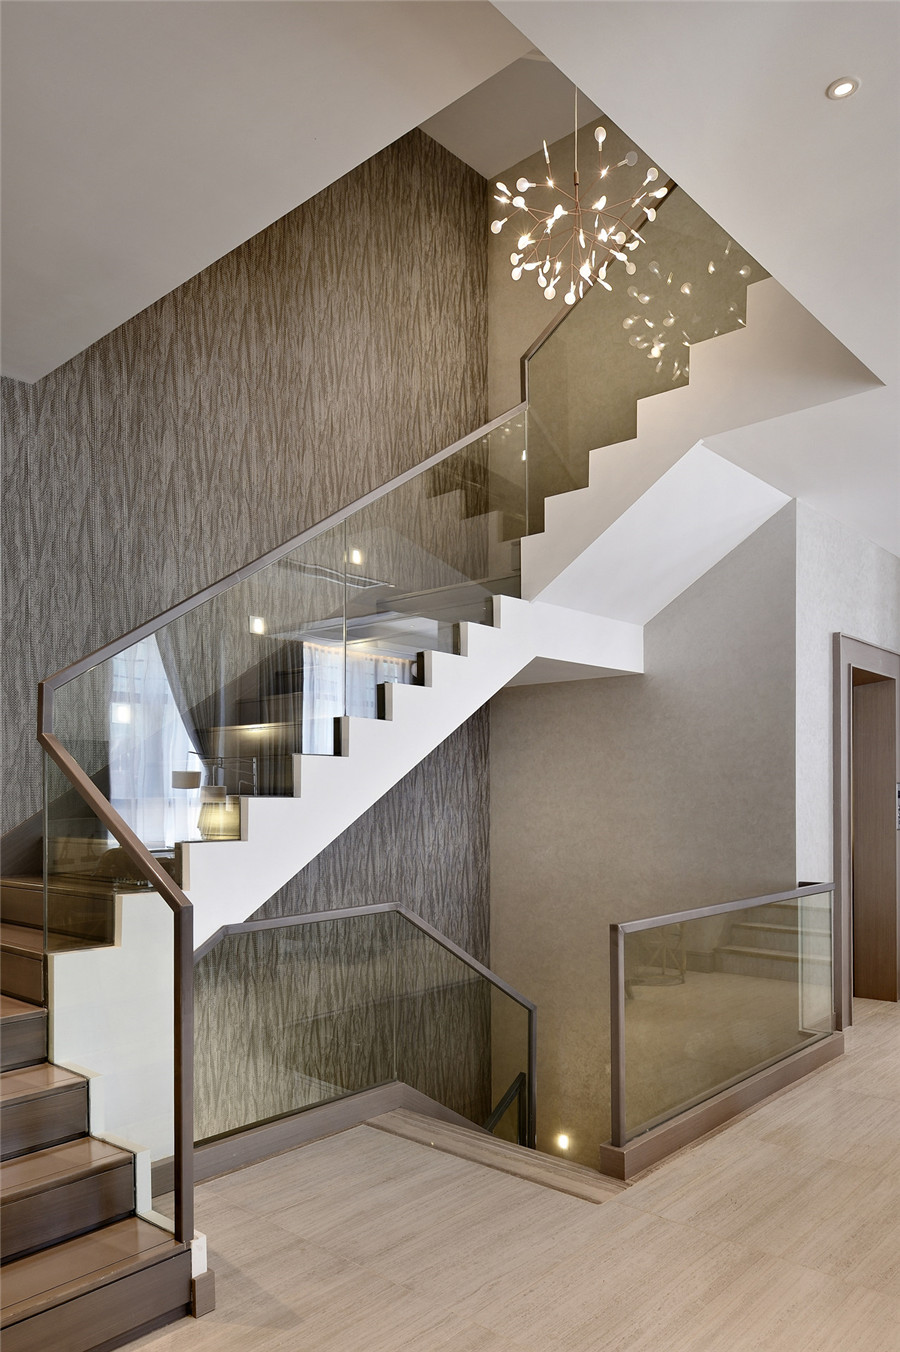 简约风格设计室内楼梯踏步装修效果图